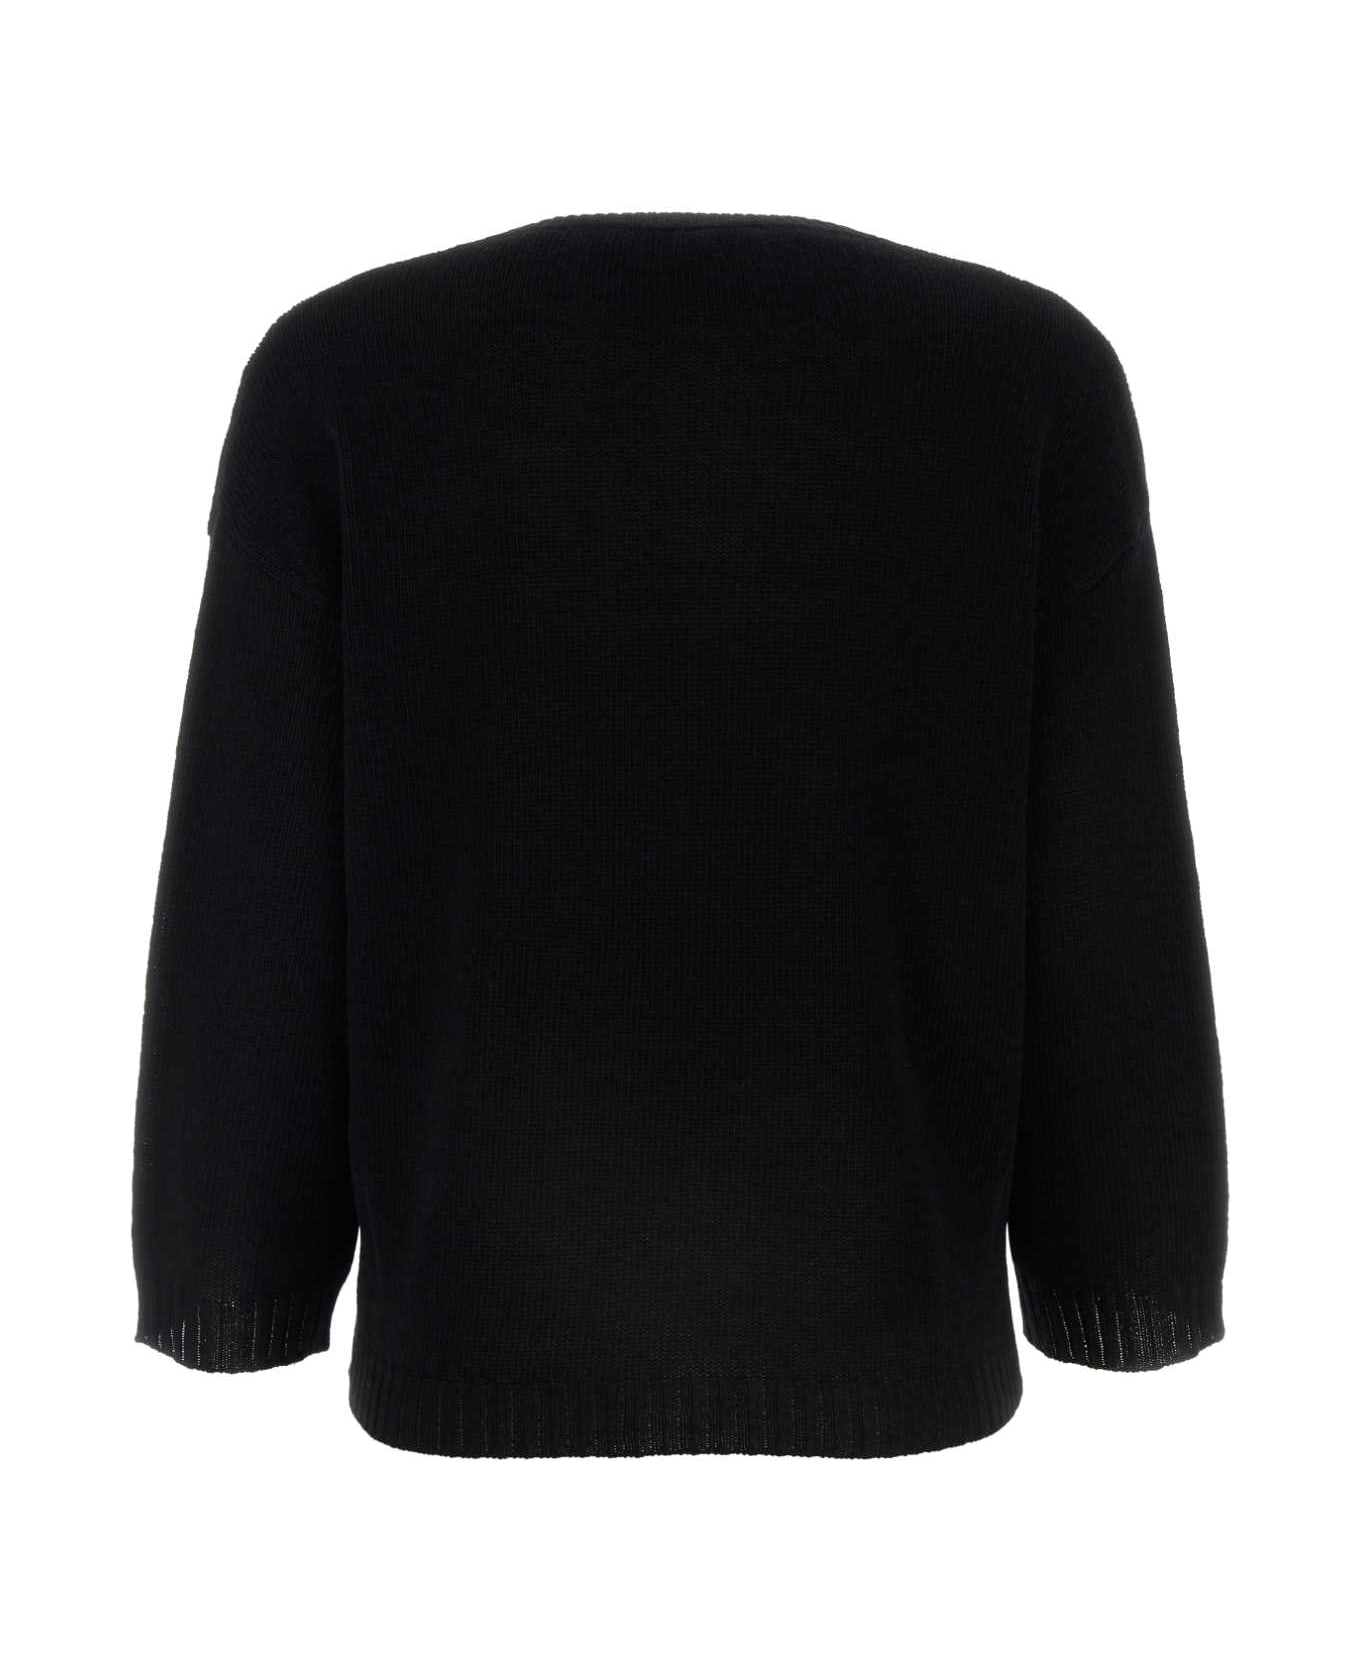 Valentino Garavani Black Wool Oversize Sweater - NERO